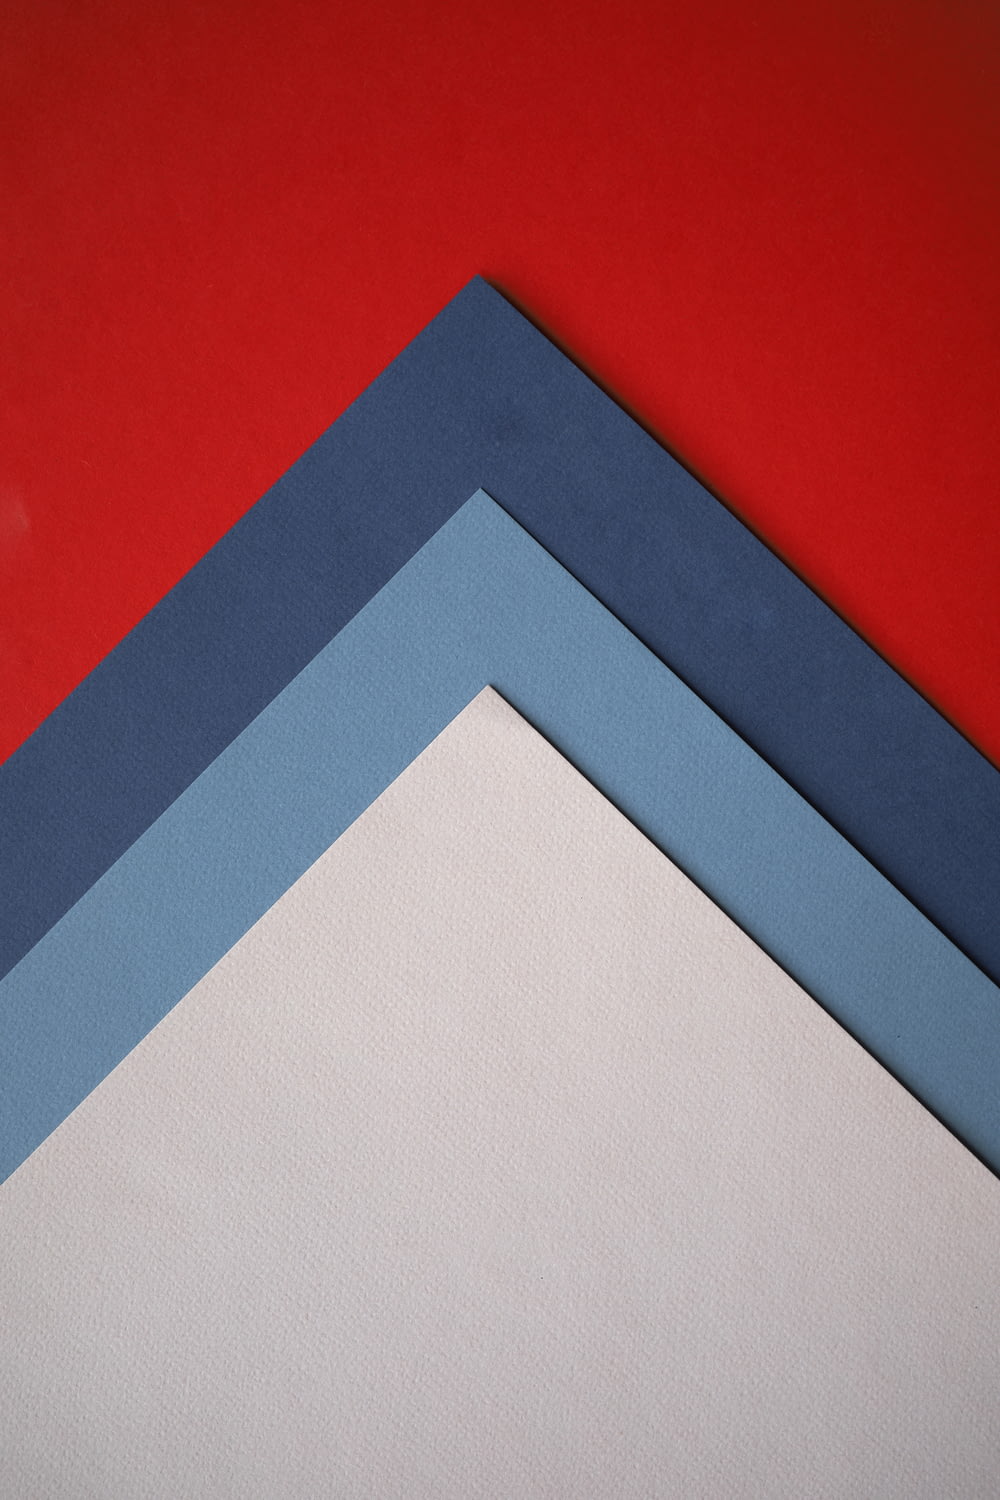 um close up de três cores diferentes de papel